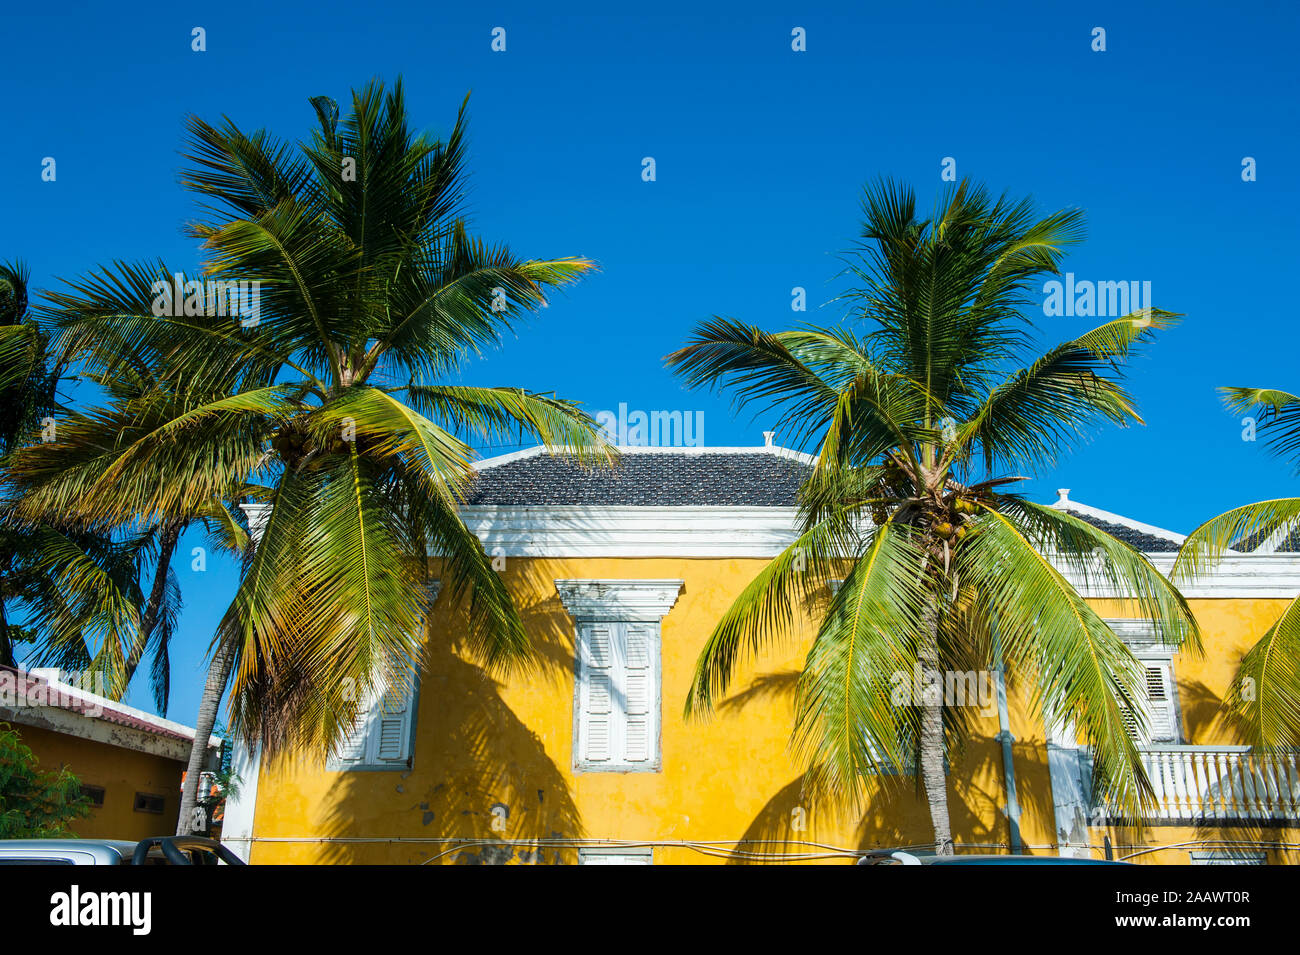 Low angle view of palm trees growing par chambre contre ciel bleu clair au cours de journée ensoleillée, Bonaire, ABC Islands, Caribbean Banque D'Images